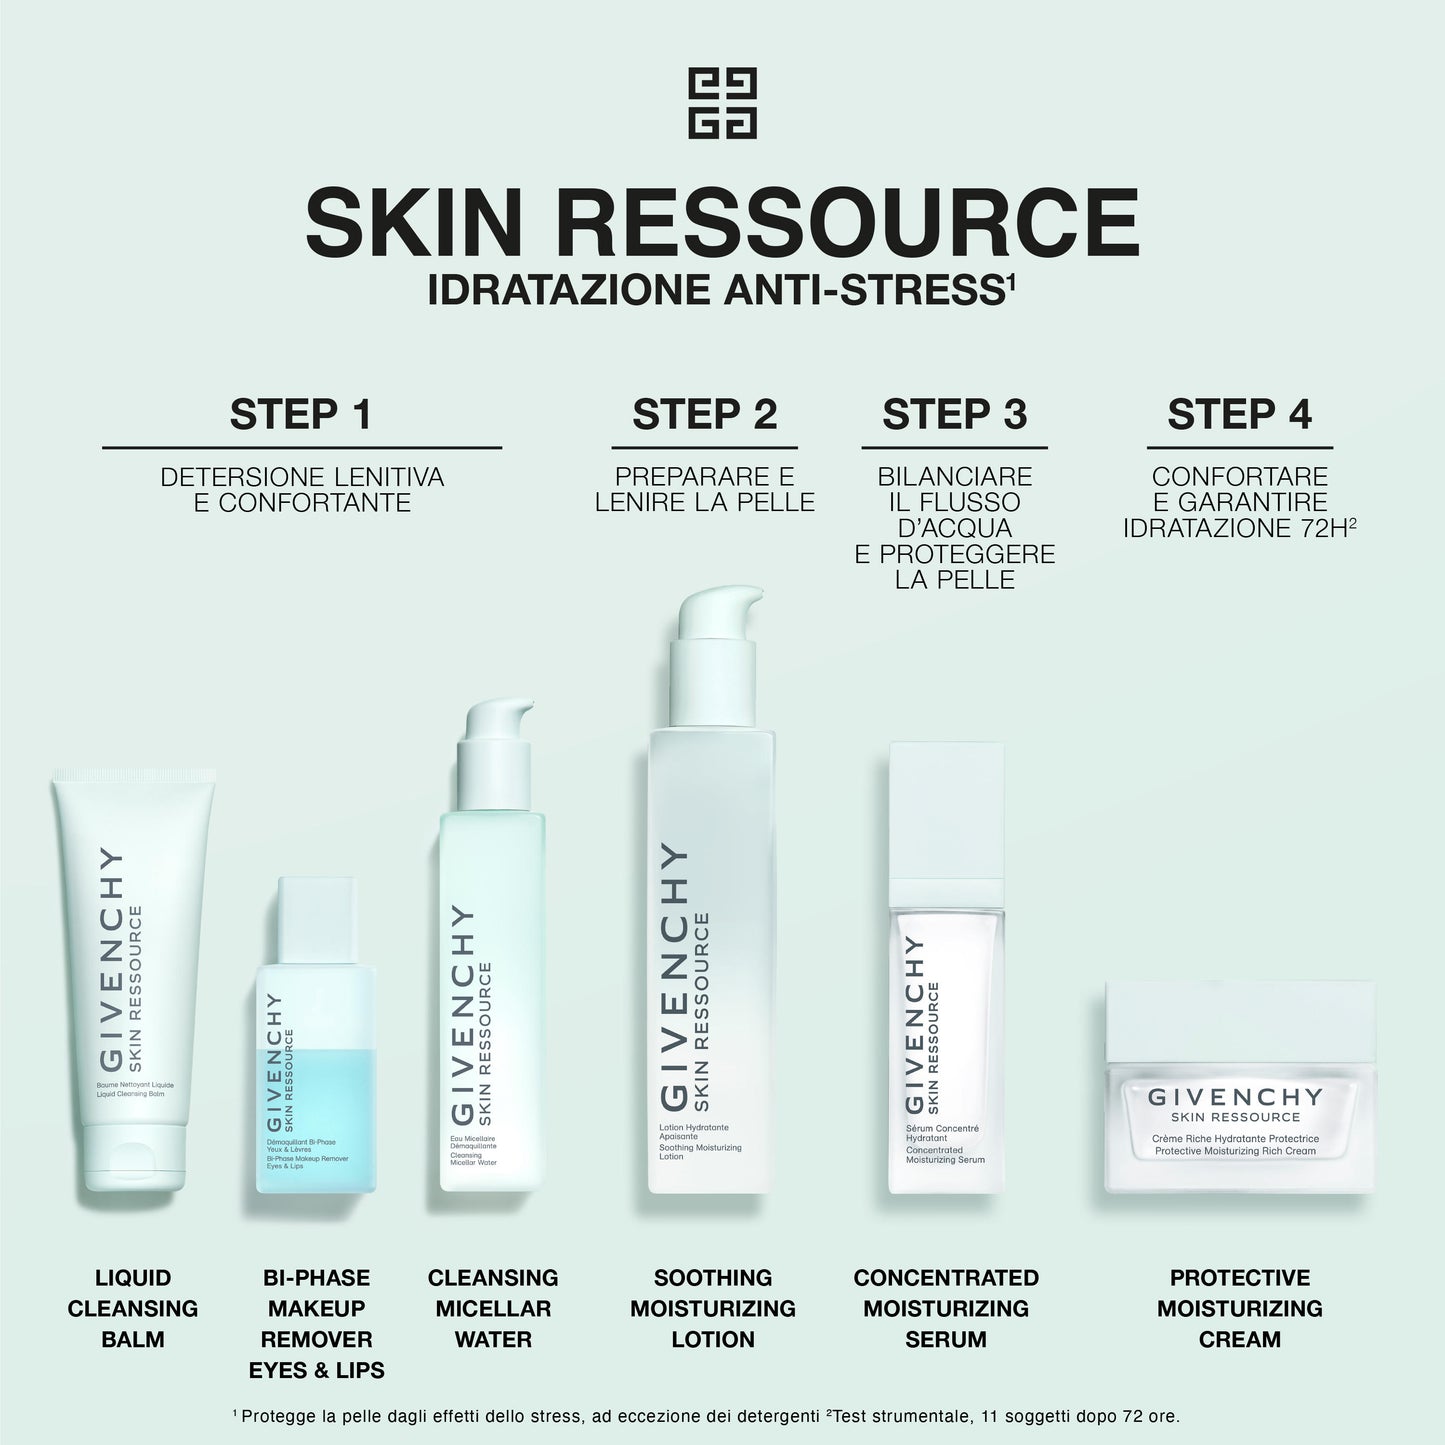 Skin Ressource Siero Idratante Concentrato Step 3